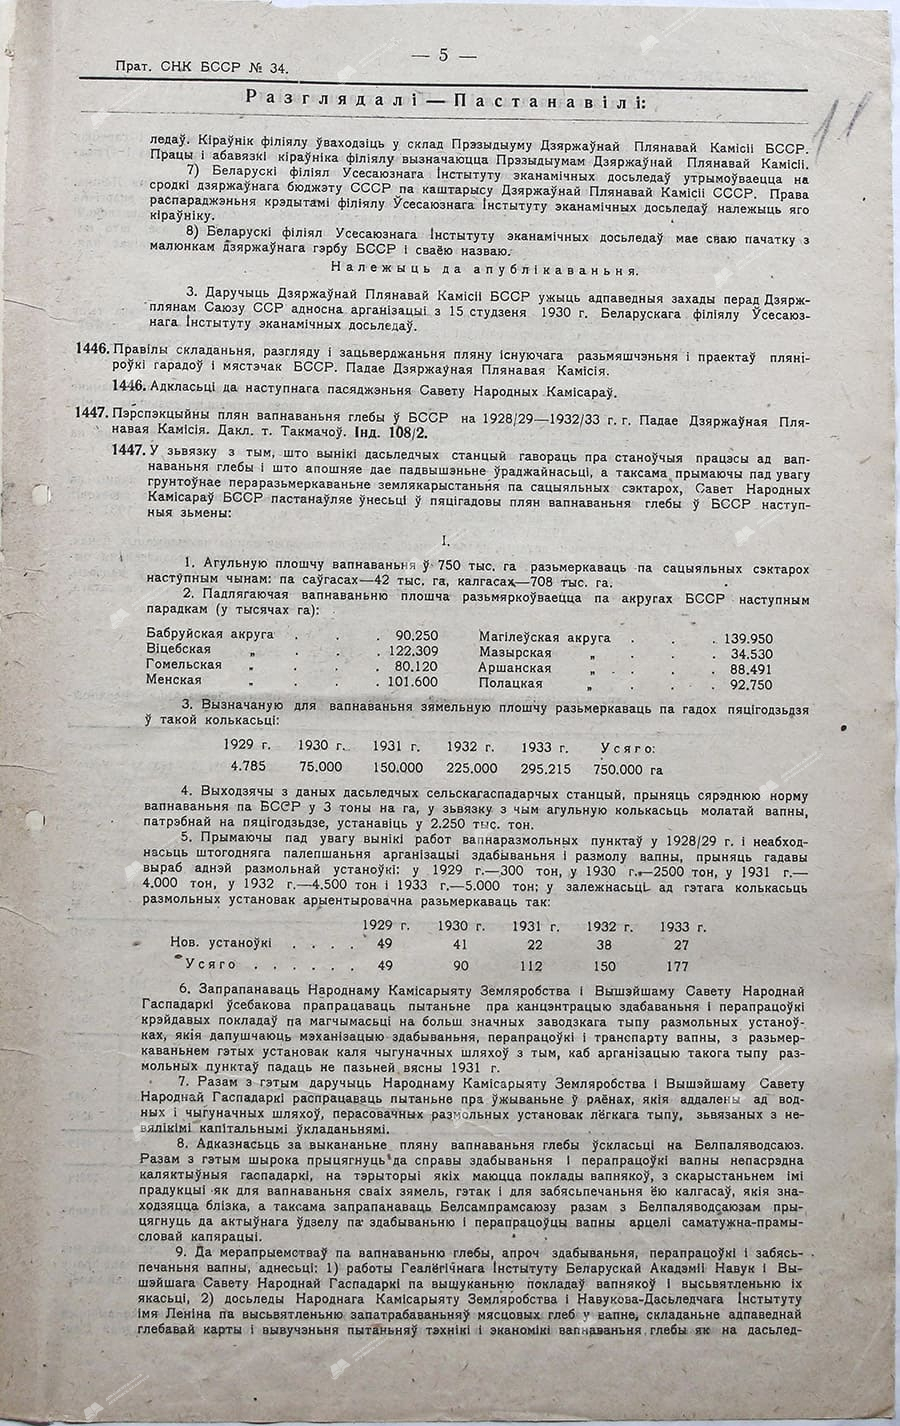 Протокол №34 заседания Совета Народных Комиссаров Белорусской ССР от 12 января 1930 г.-с. 2